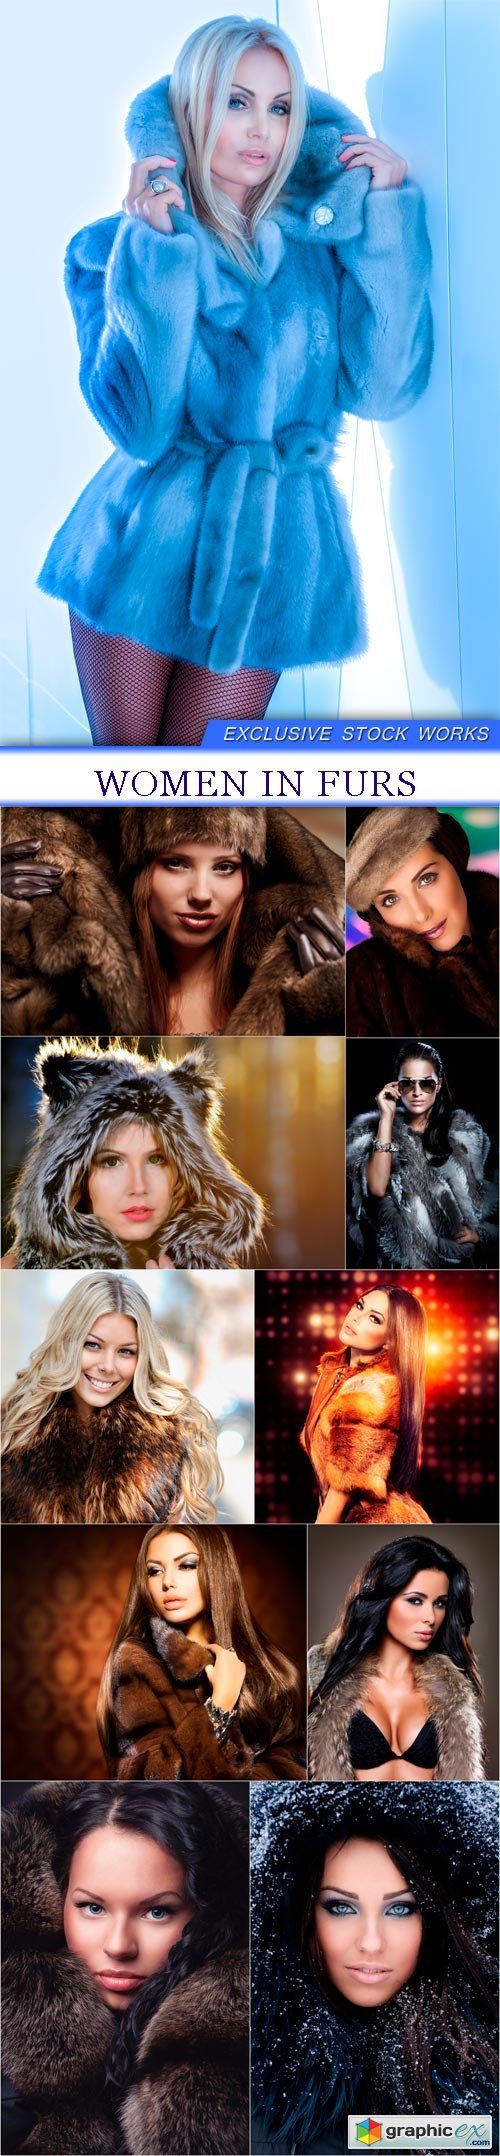 Women in furs 11x JPEG